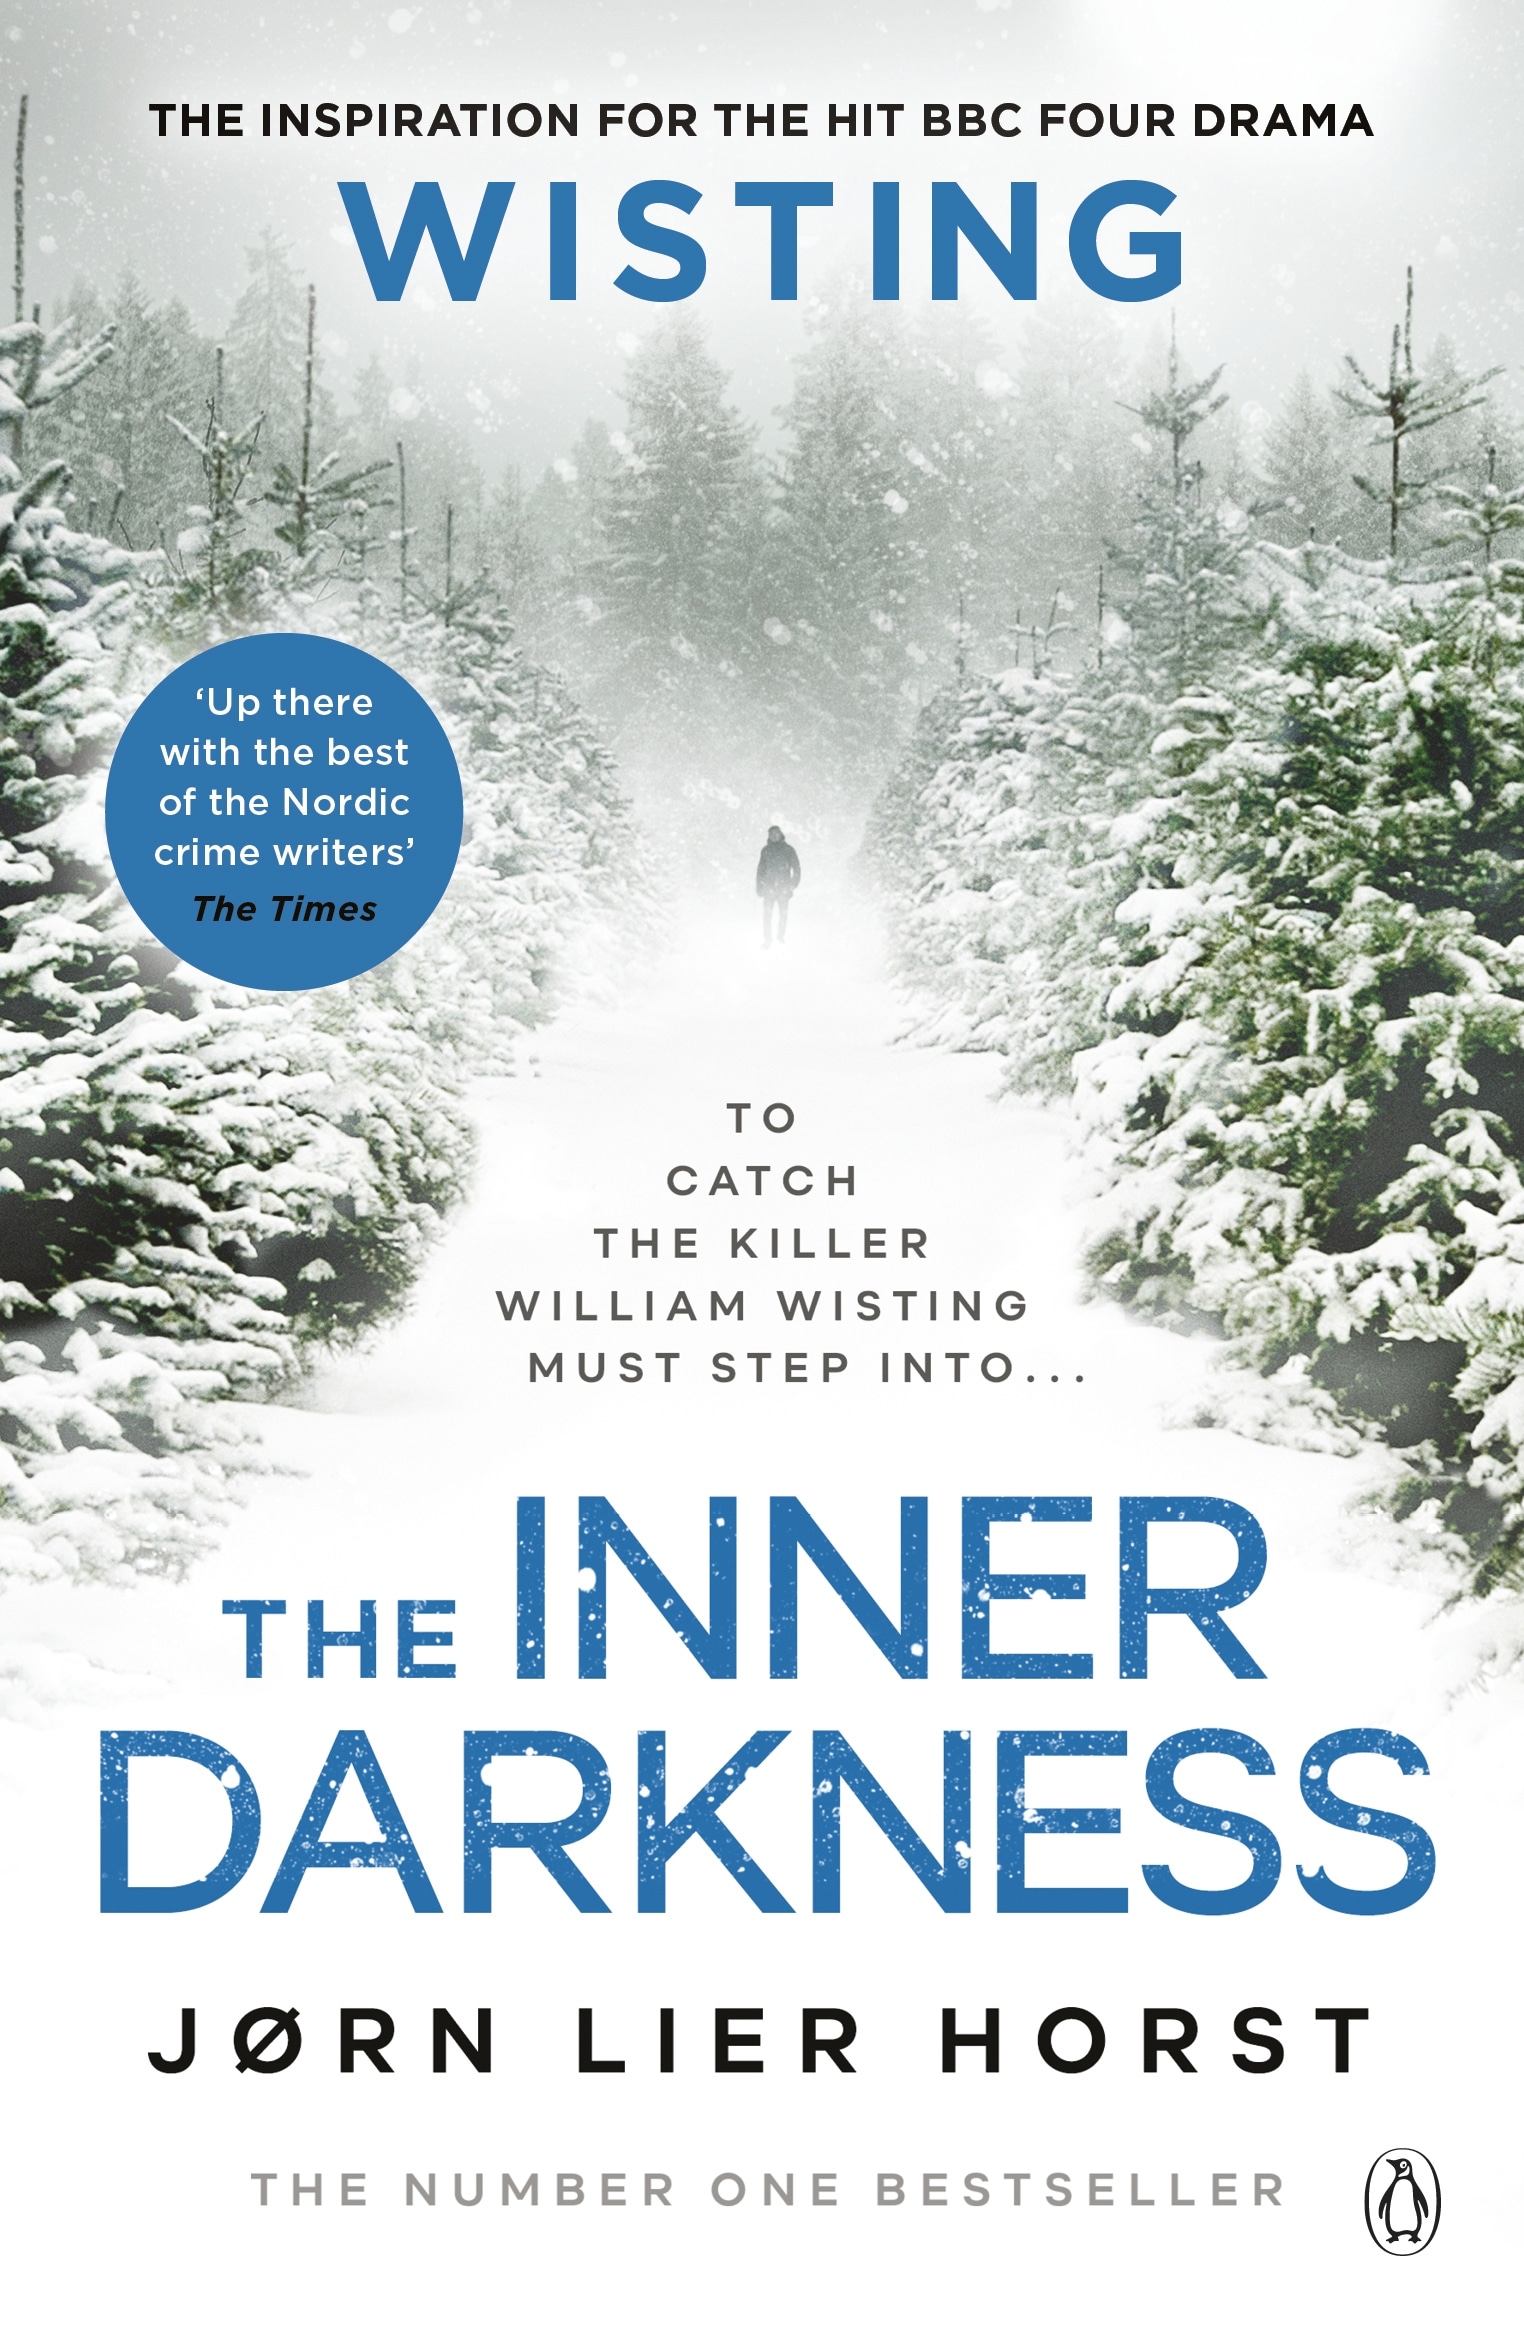 Book “The Inner Darkness” by Jørn Lier Horst — April 1, 2021